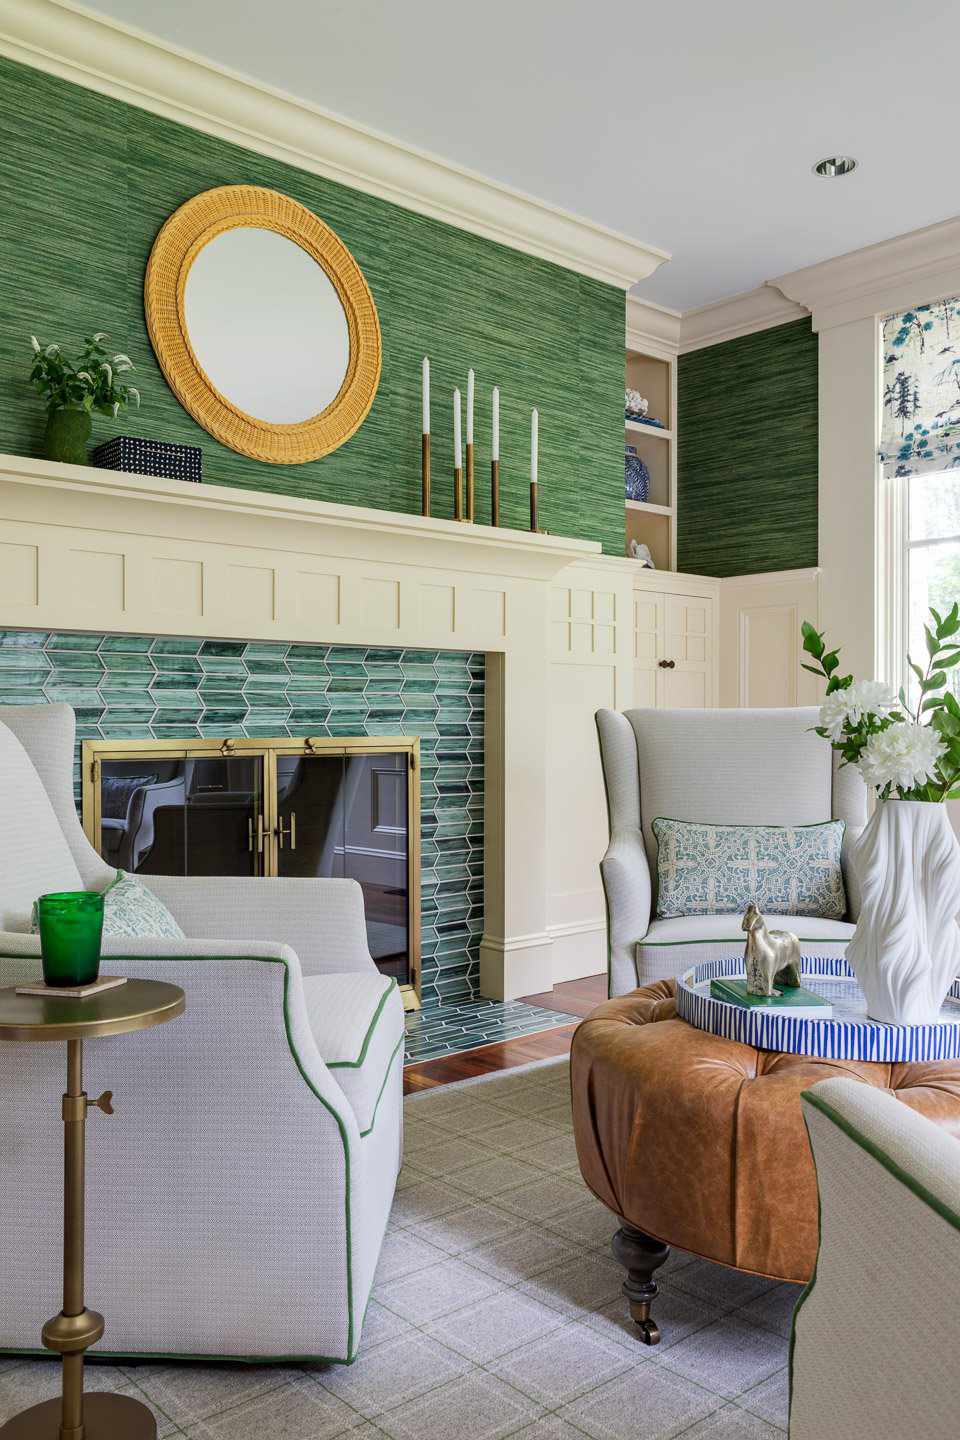 Wohnzimmer mit türkisfarbenem Kachelkamin und grüner Grasfasertapete